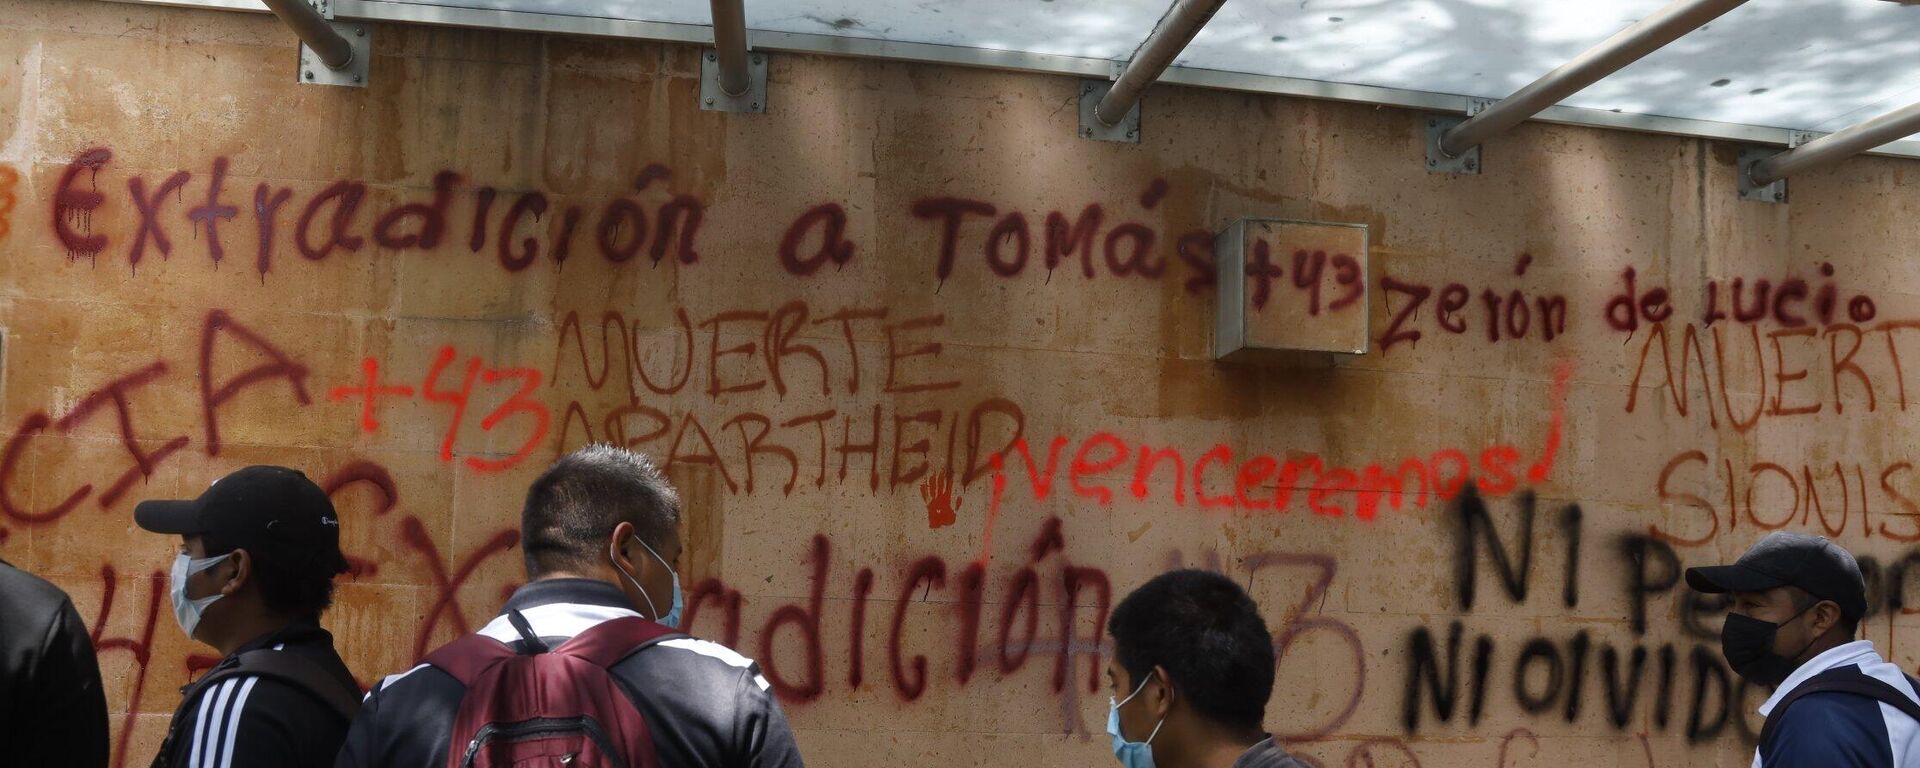 Manifestantes por el caso Ayotzinapa realizaron pintas en los muros de contención de la embajada de Israel en México. - Sputnik Mundo, 1920, 22.09.2022